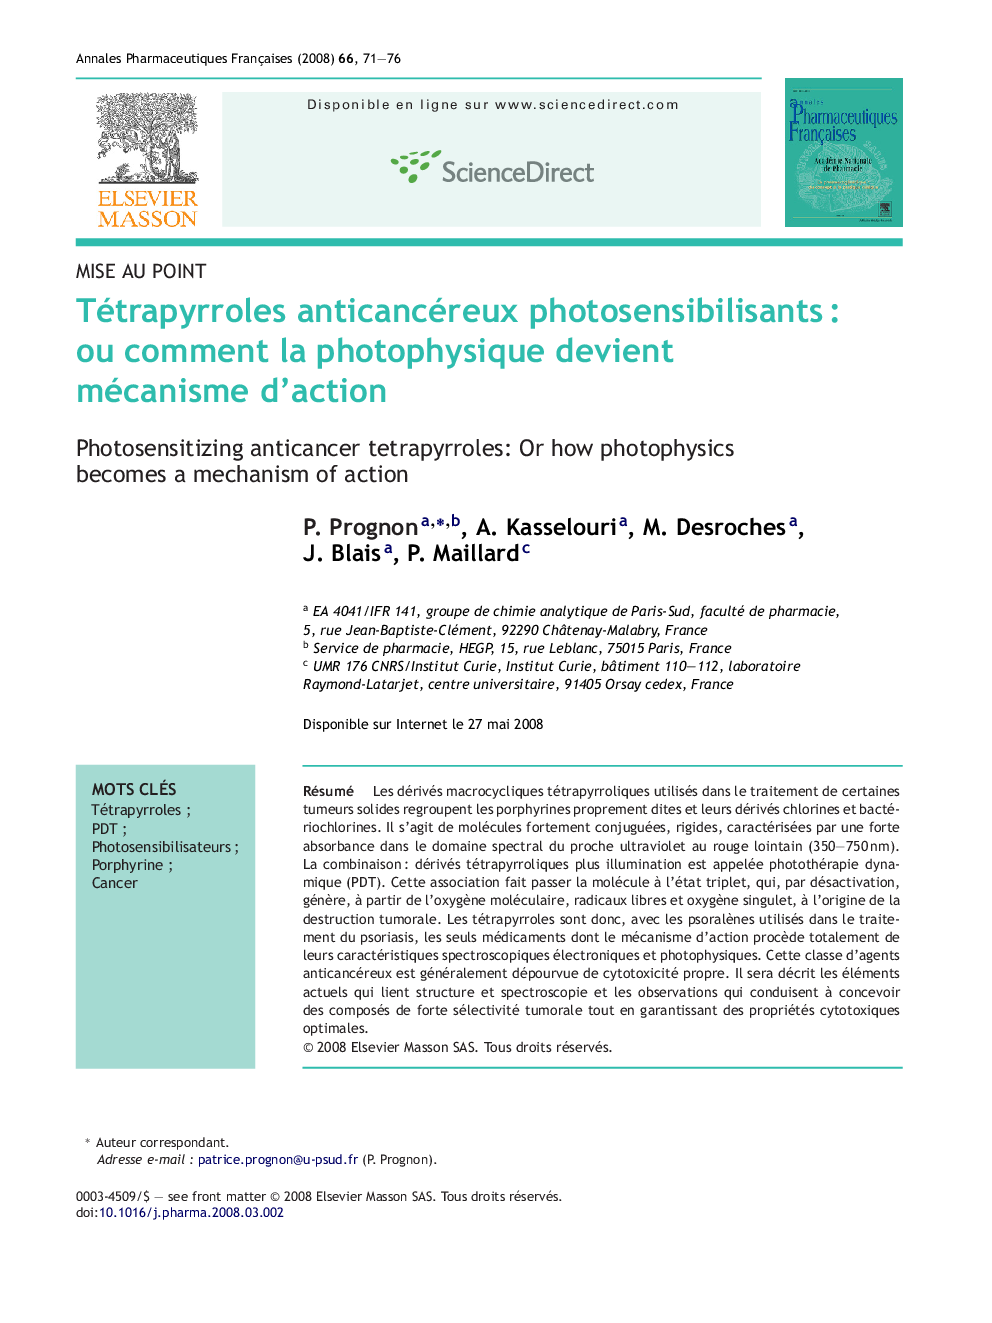 Tétrapyrroles anticancéreux photosensibilisantsÂ : ou comment la photophysique devient mécanisme d'action